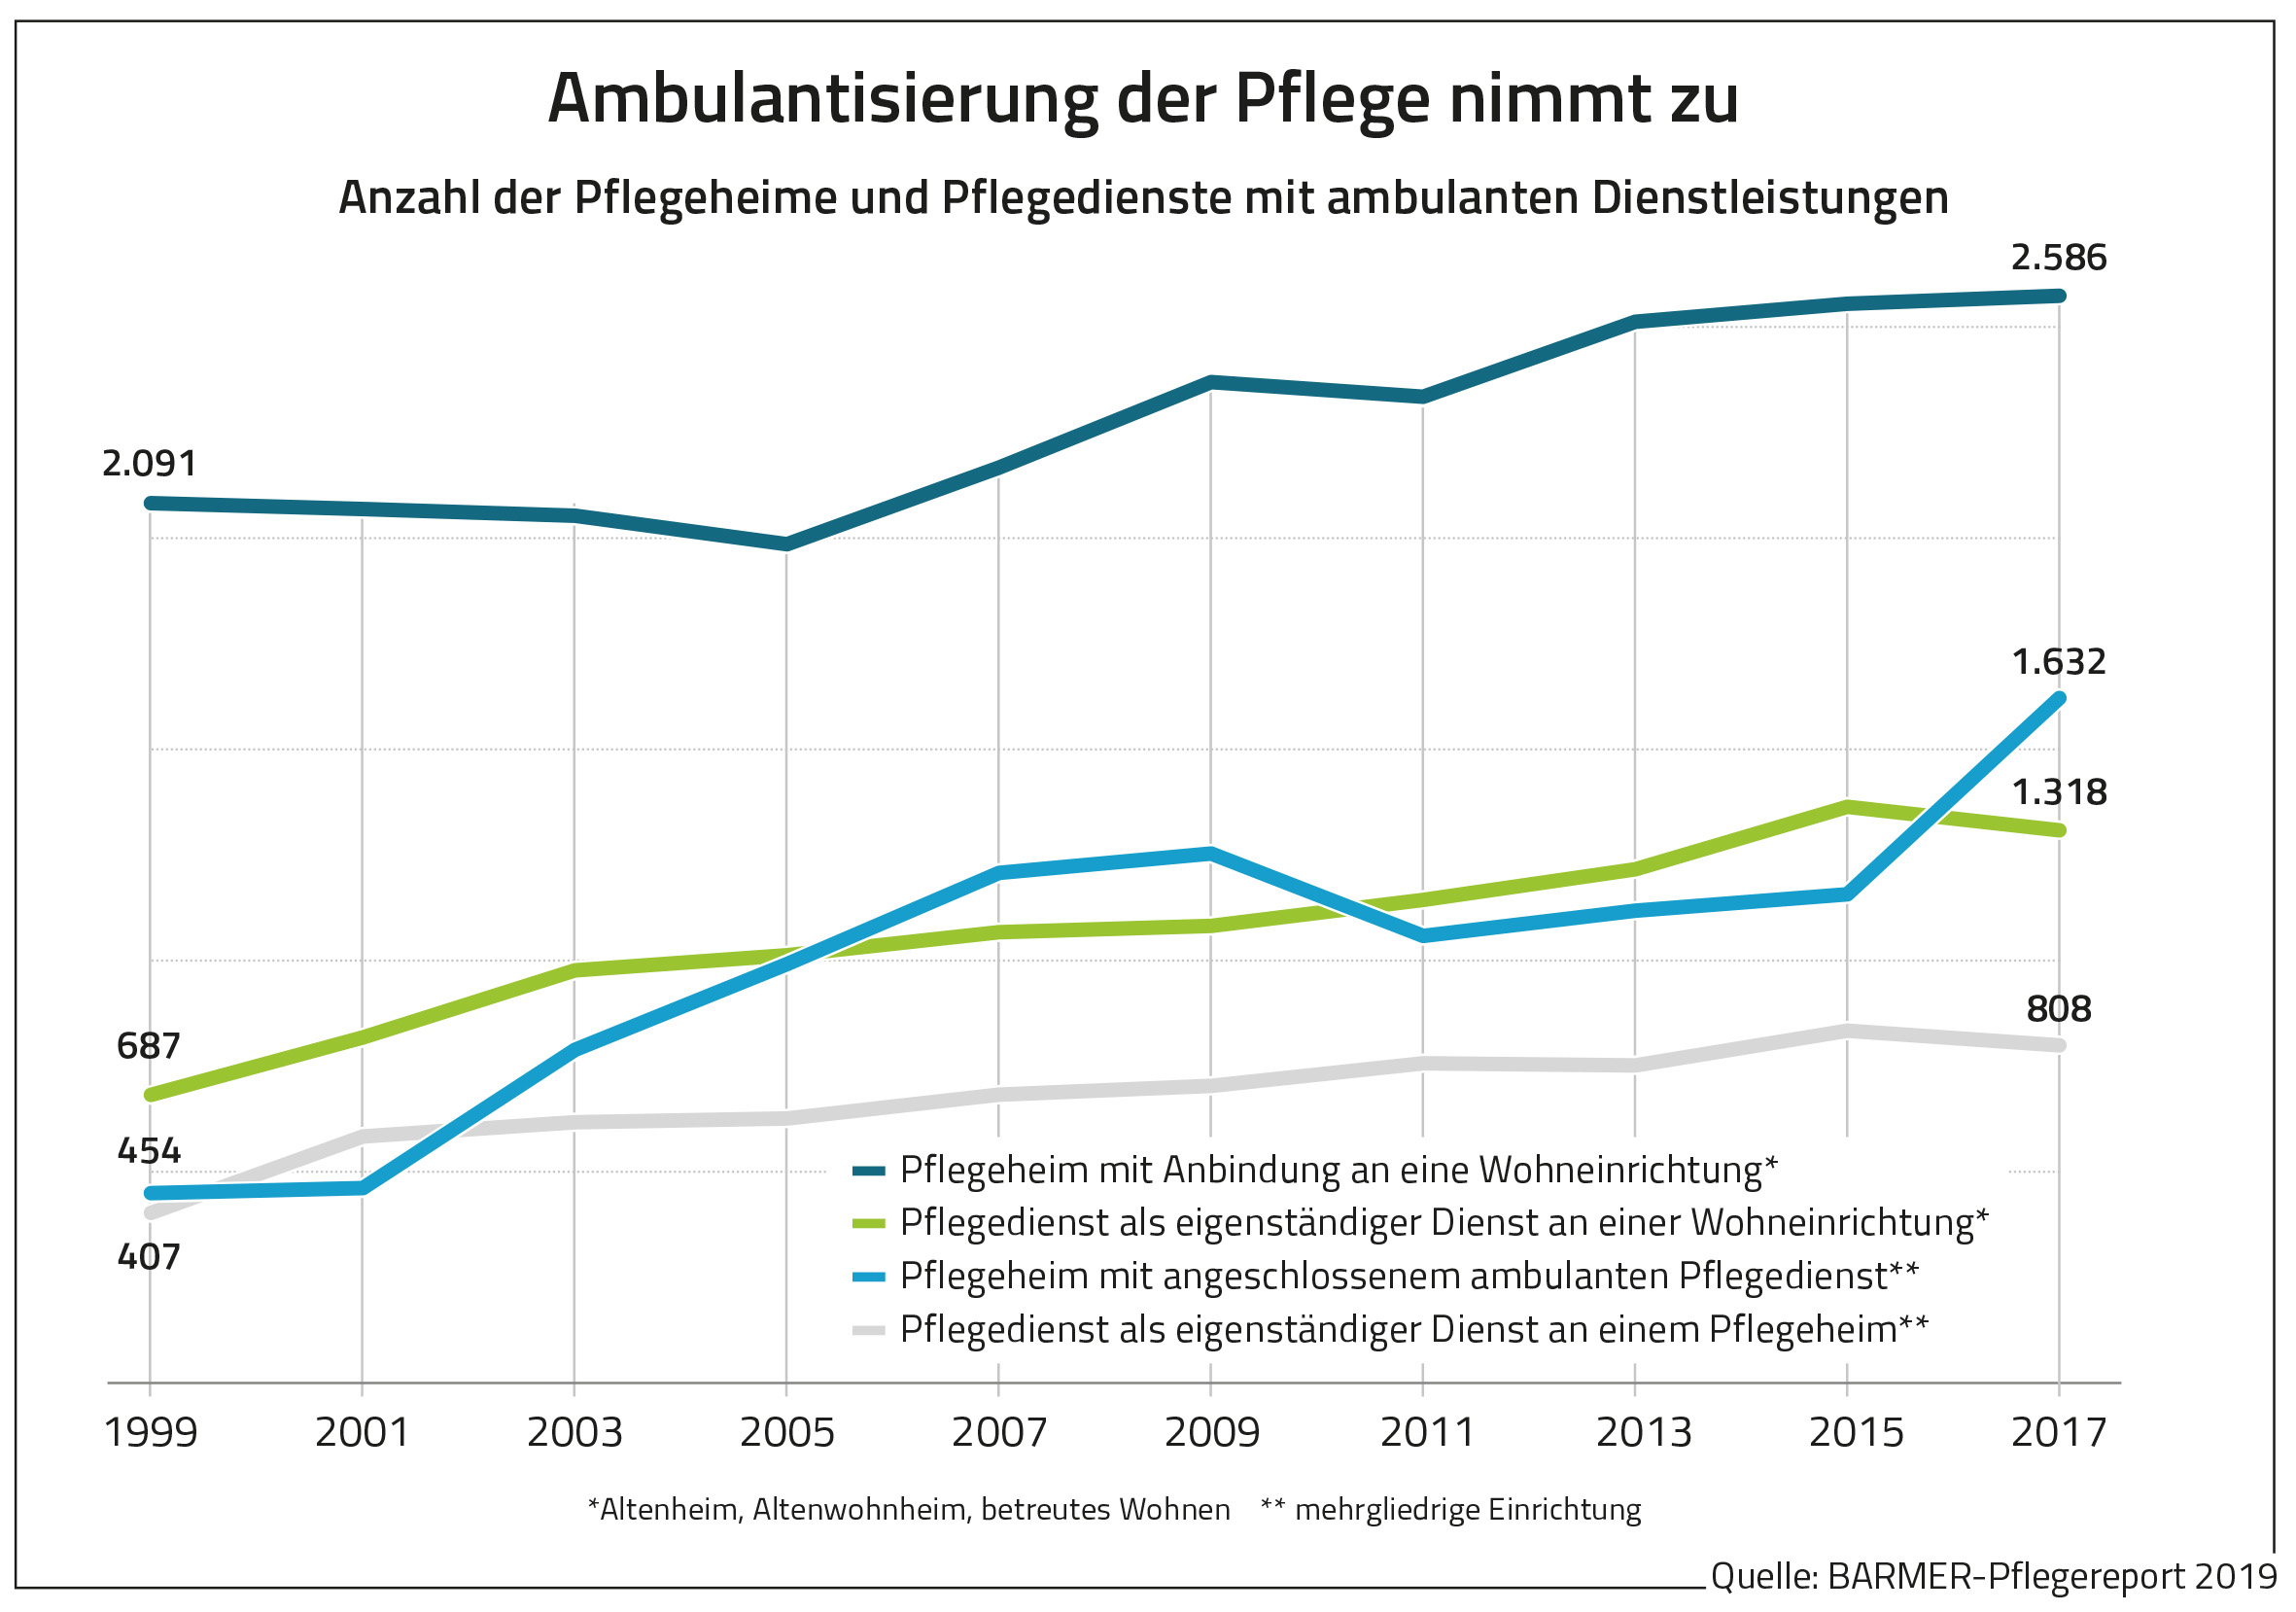 Die Grafik zeigt die Anzahl der Pflegeheime und Pflegedienste mit ambulanten Dienstleistungen.